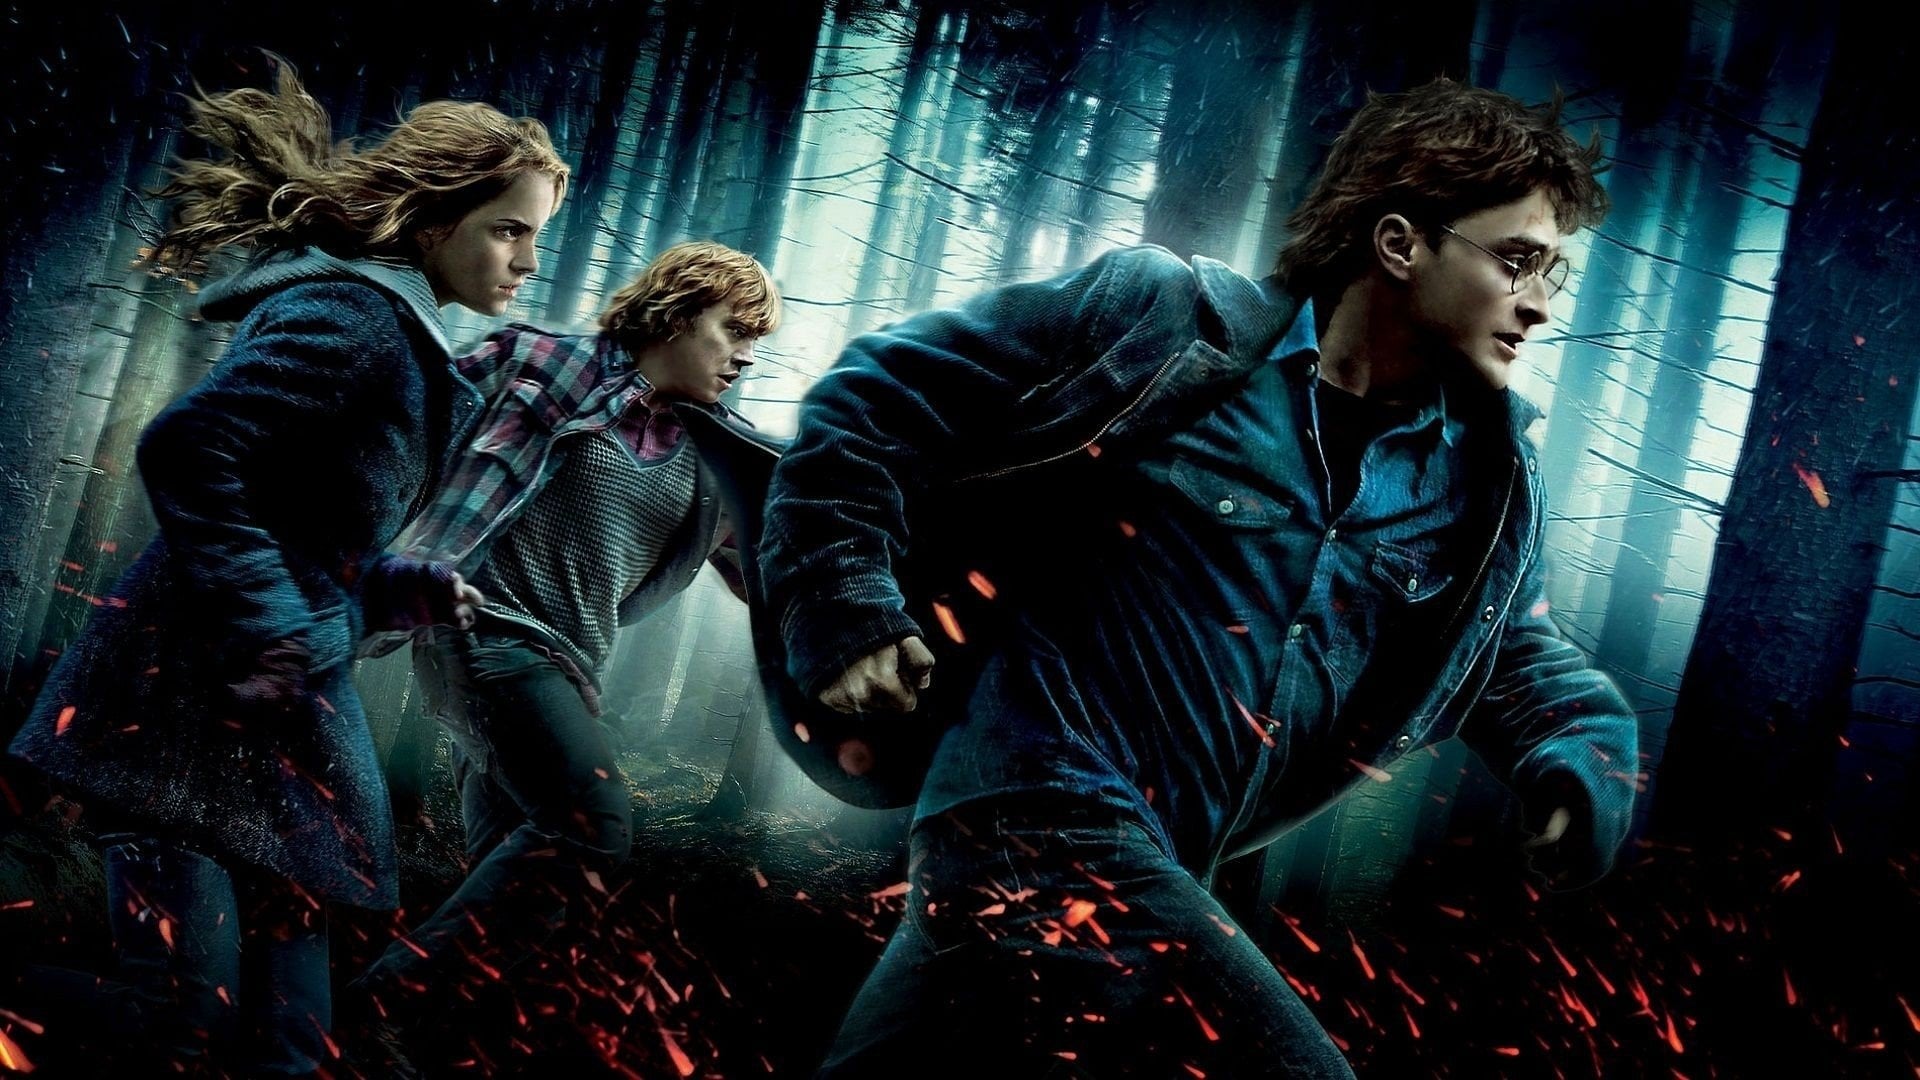 Harry Potter et les Reliques de la mort : 1ère partie (2010)